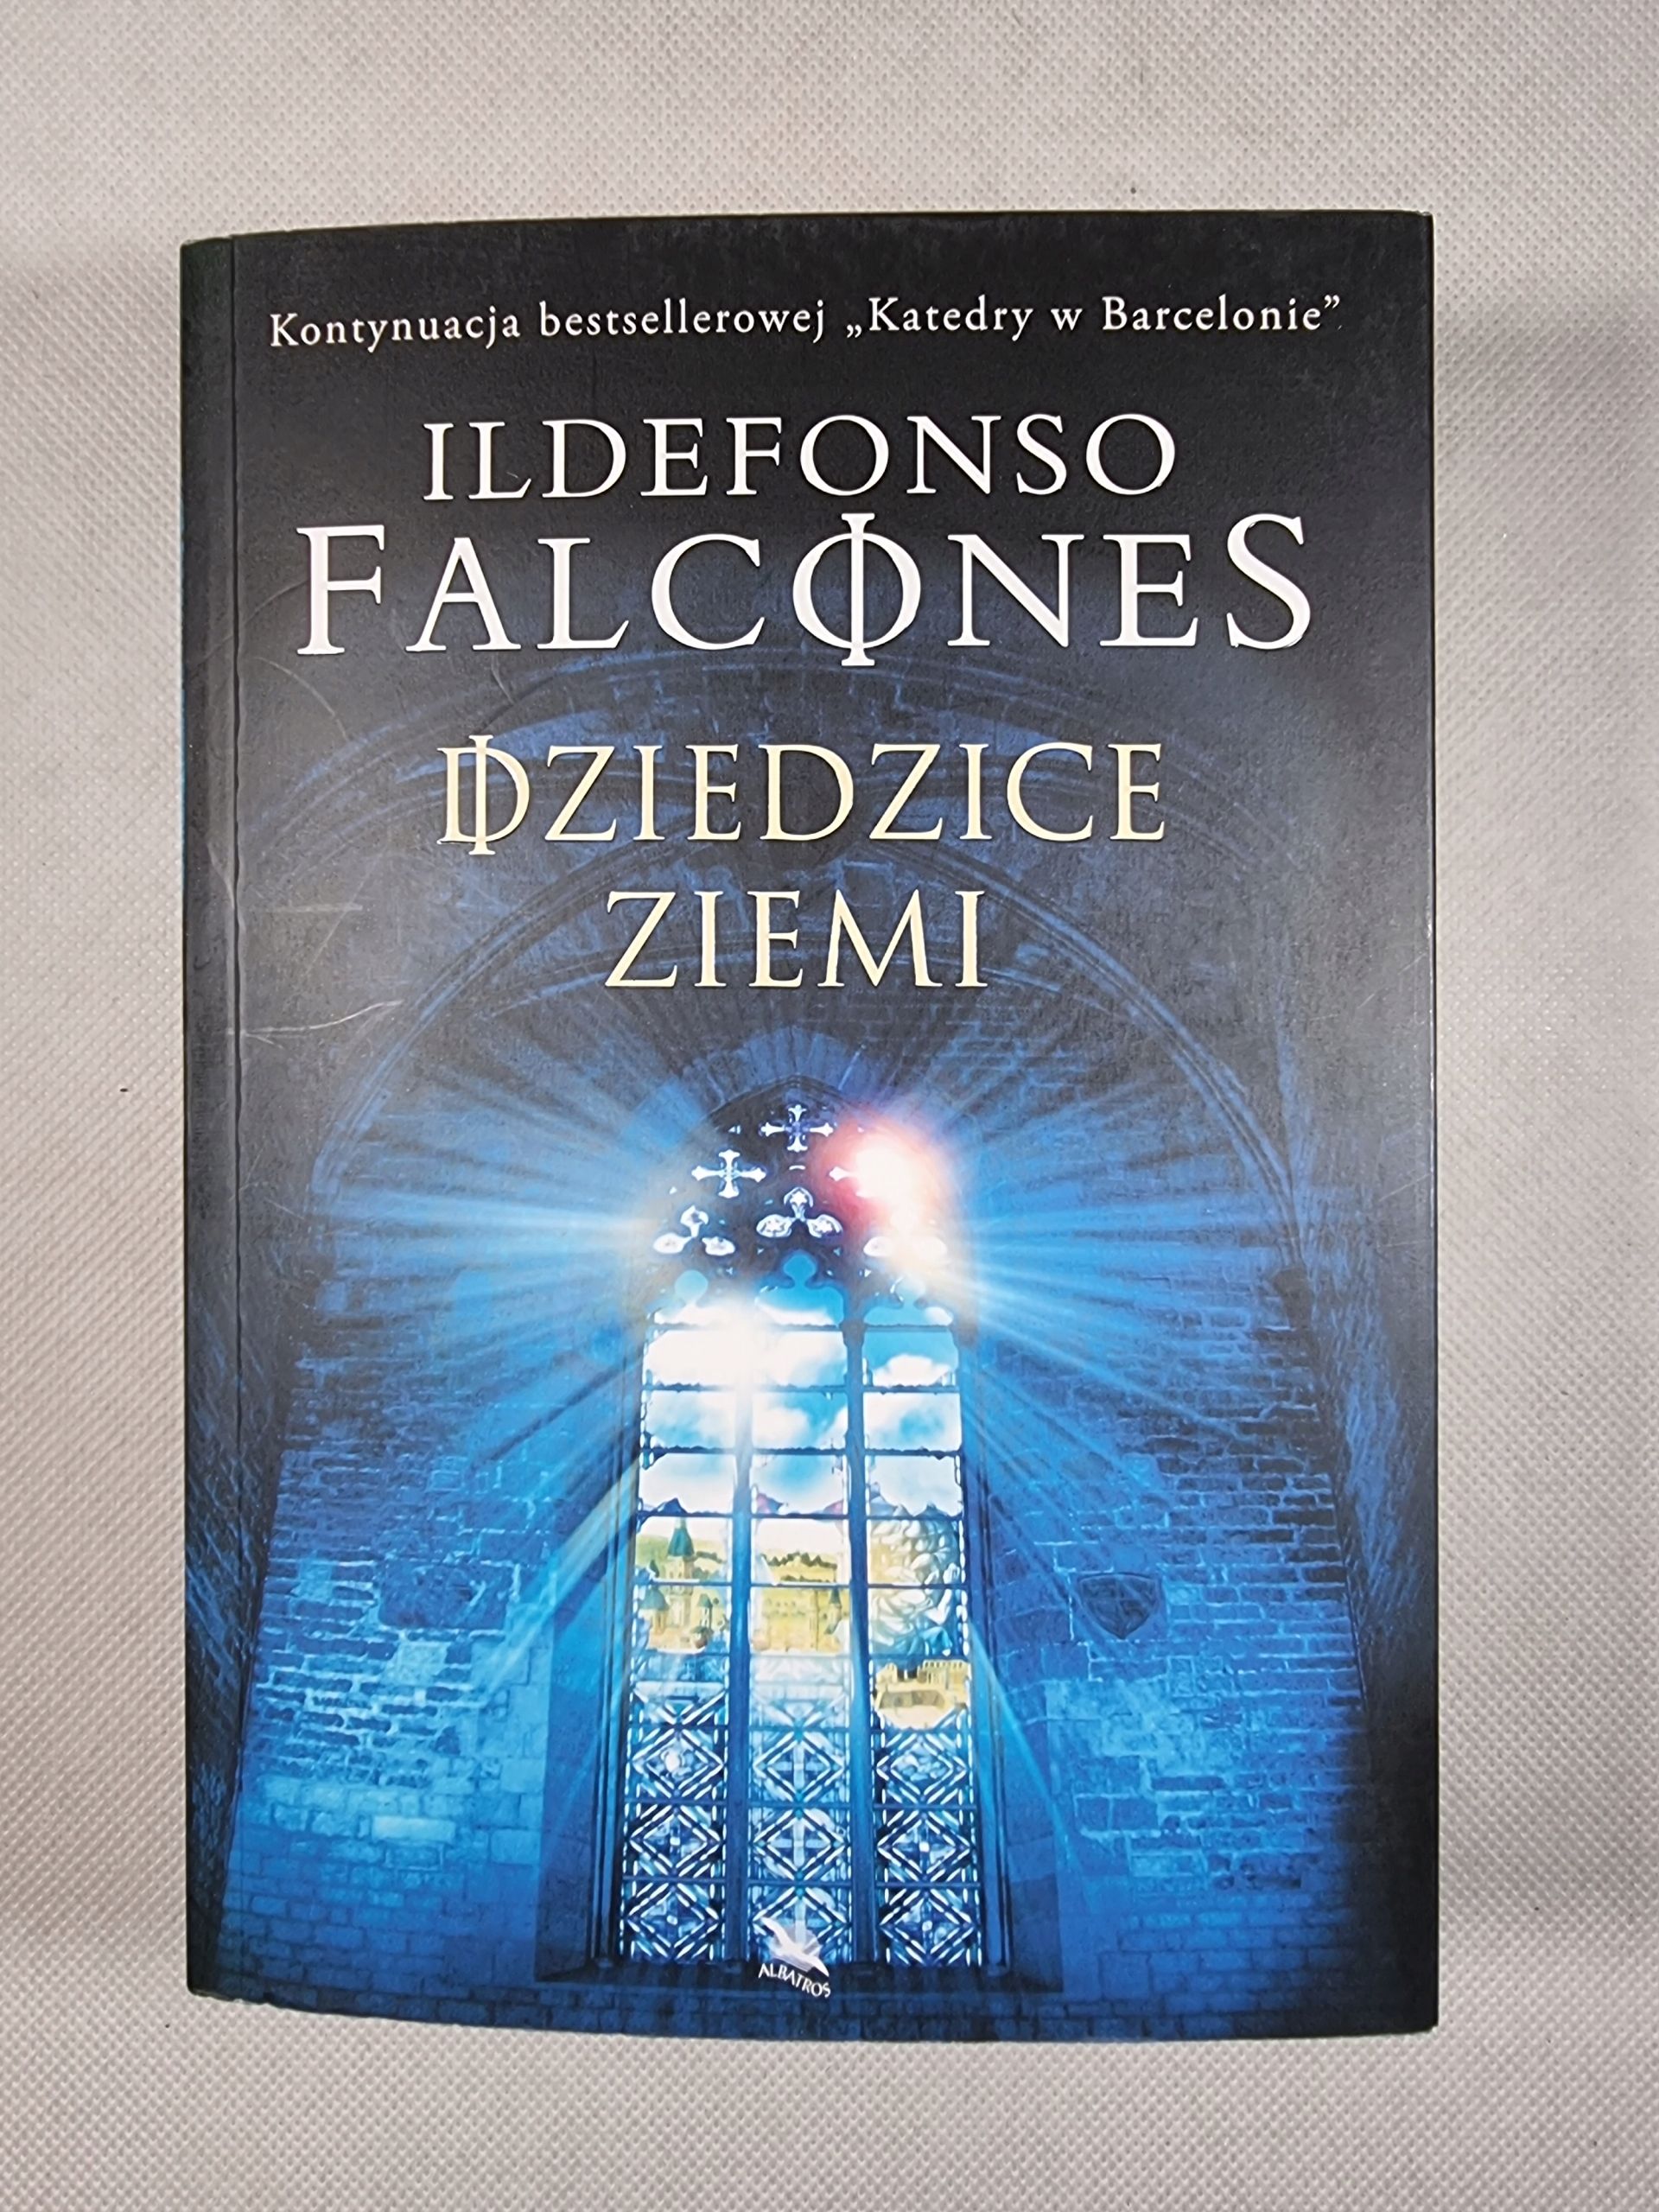 Dziedzice Ziemi / Ildefonso Falcones